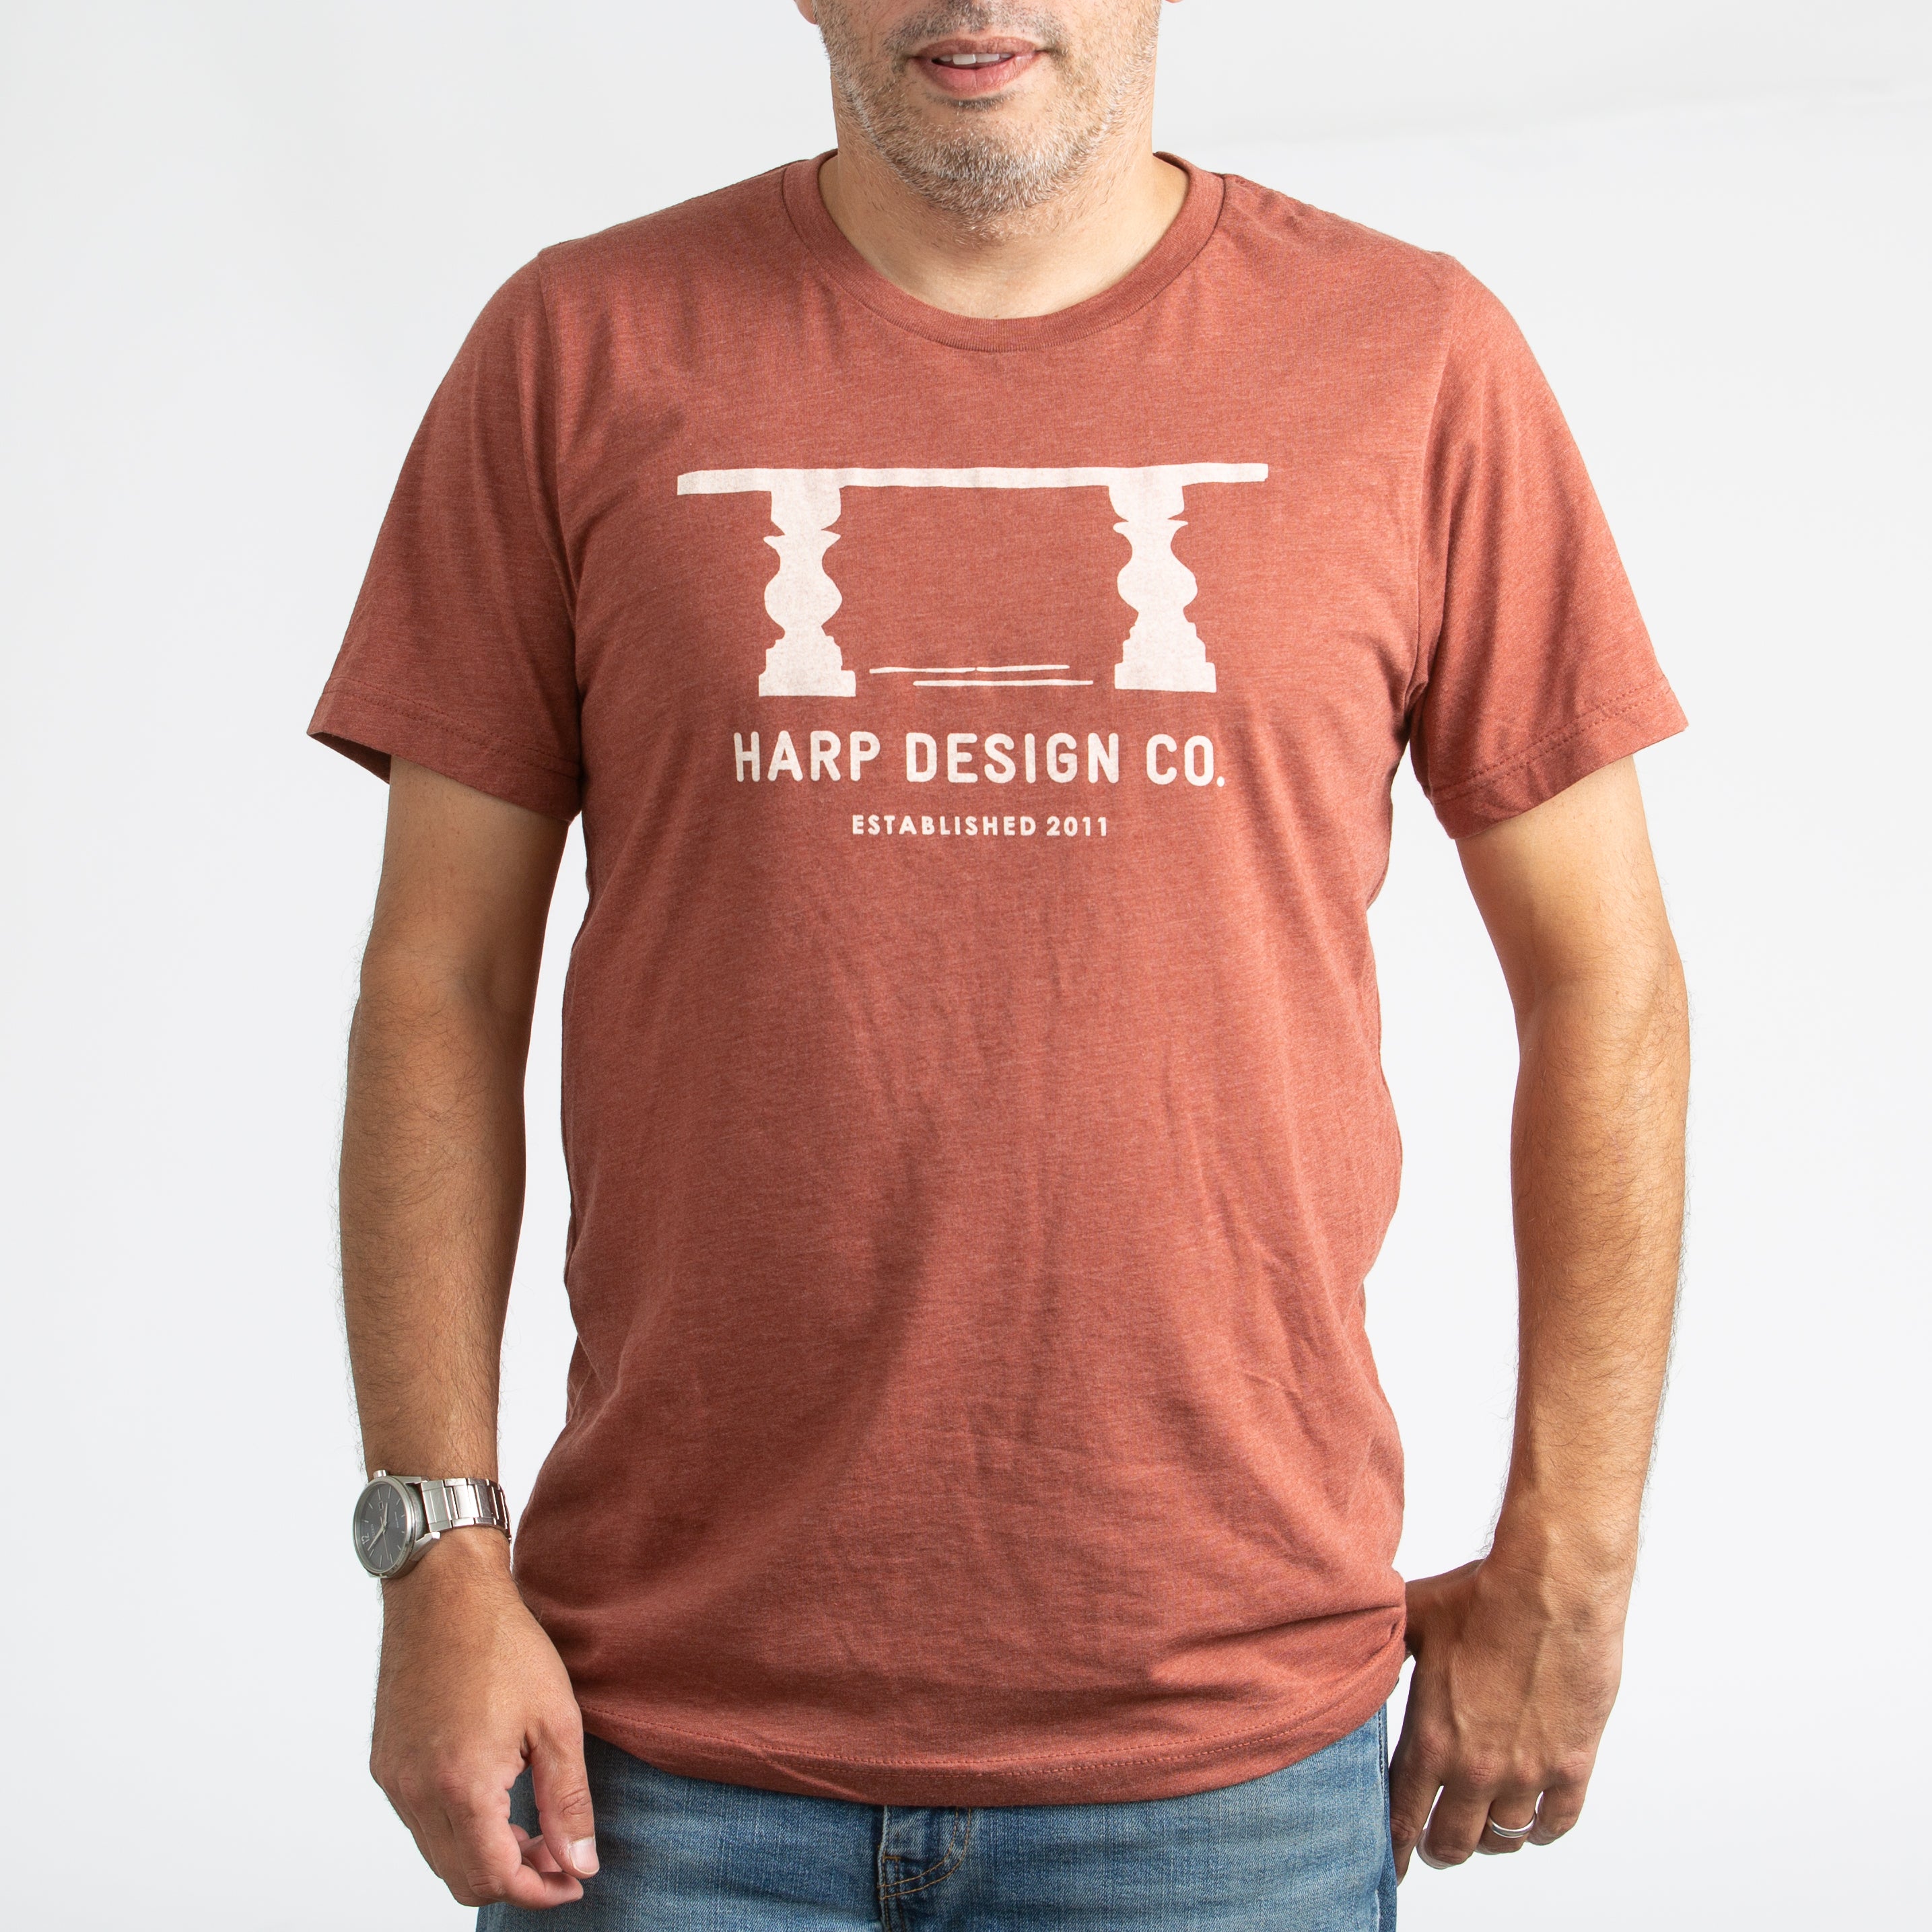 Harp Design Co. Table Print T-Shirt